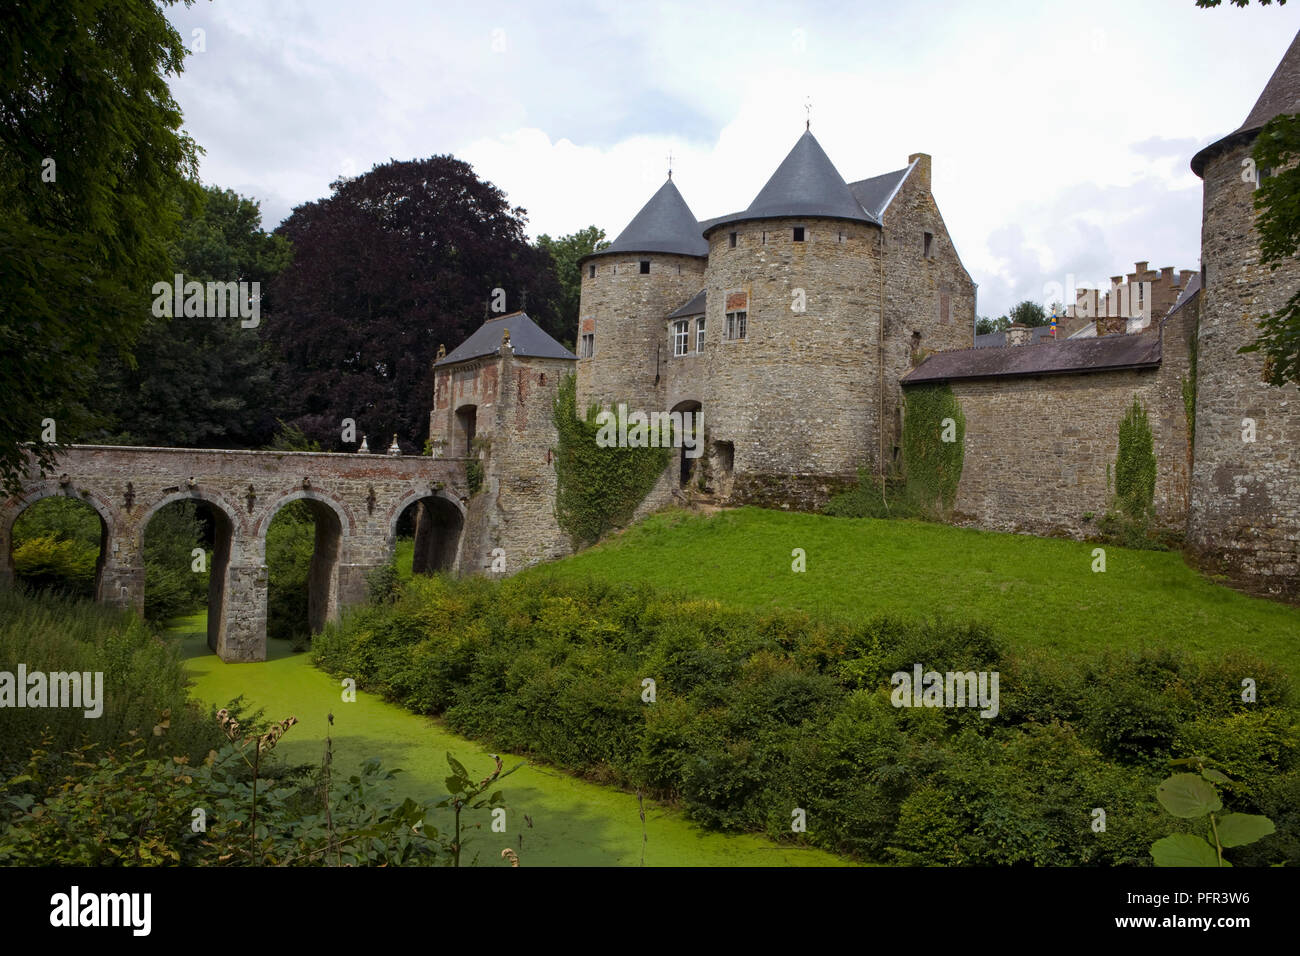 Belgium, Wallonia, Chateau de Corroy-le-Chateau (Corroy le Chateau Castle), exterior Stock Photo